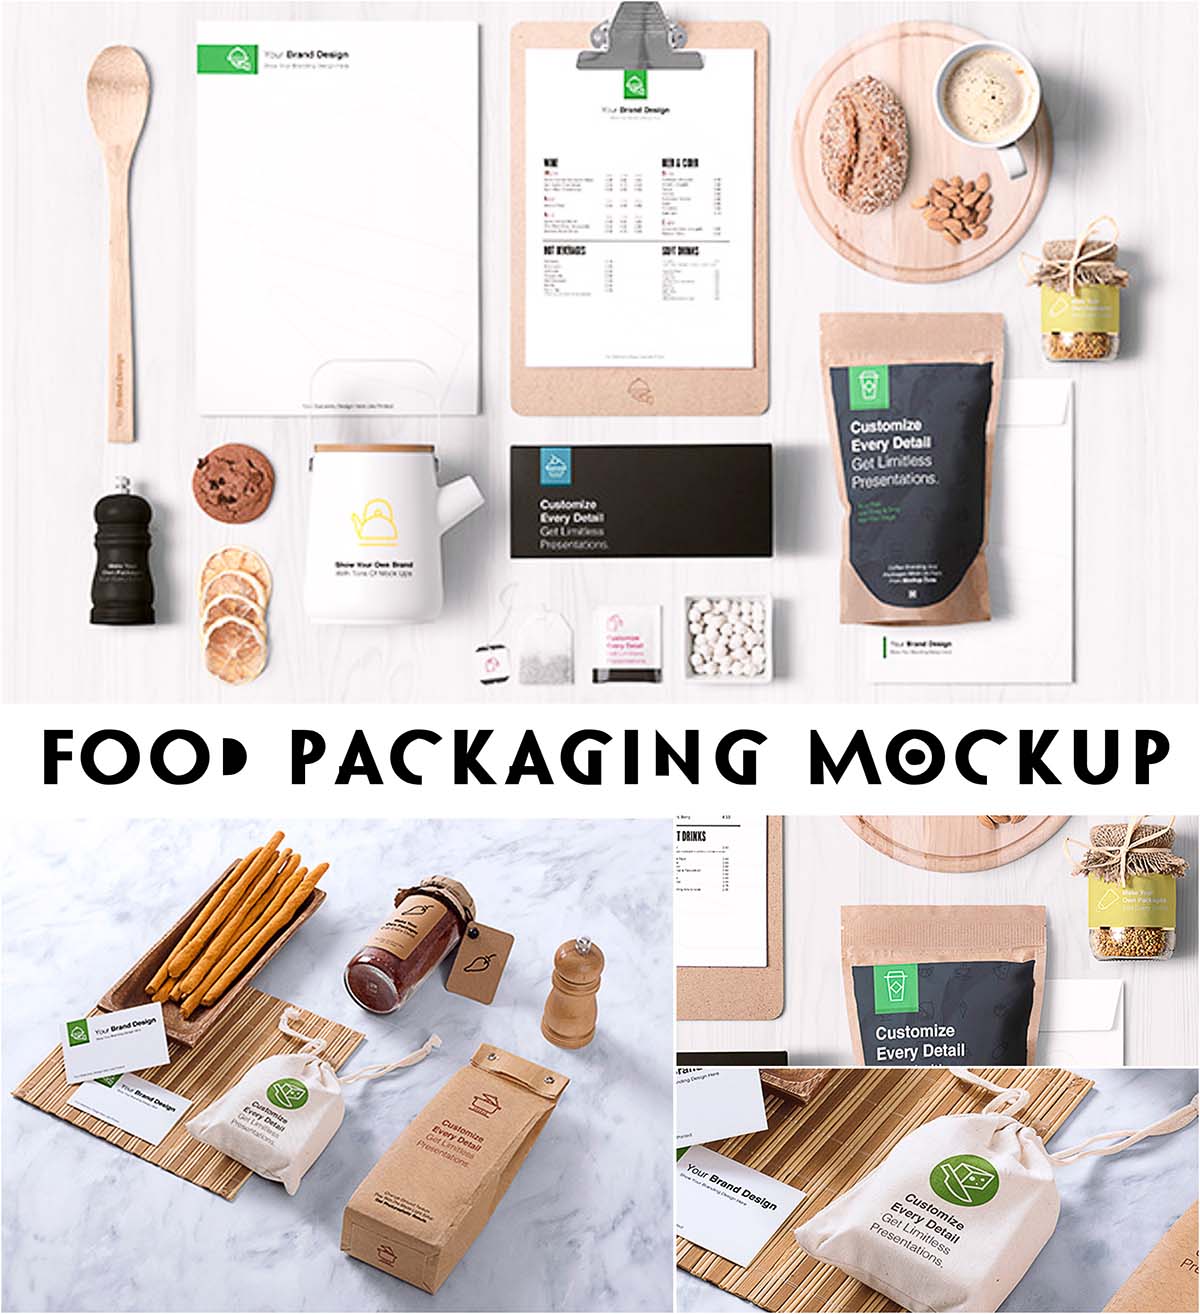 Food packaging branding mockups | Free download